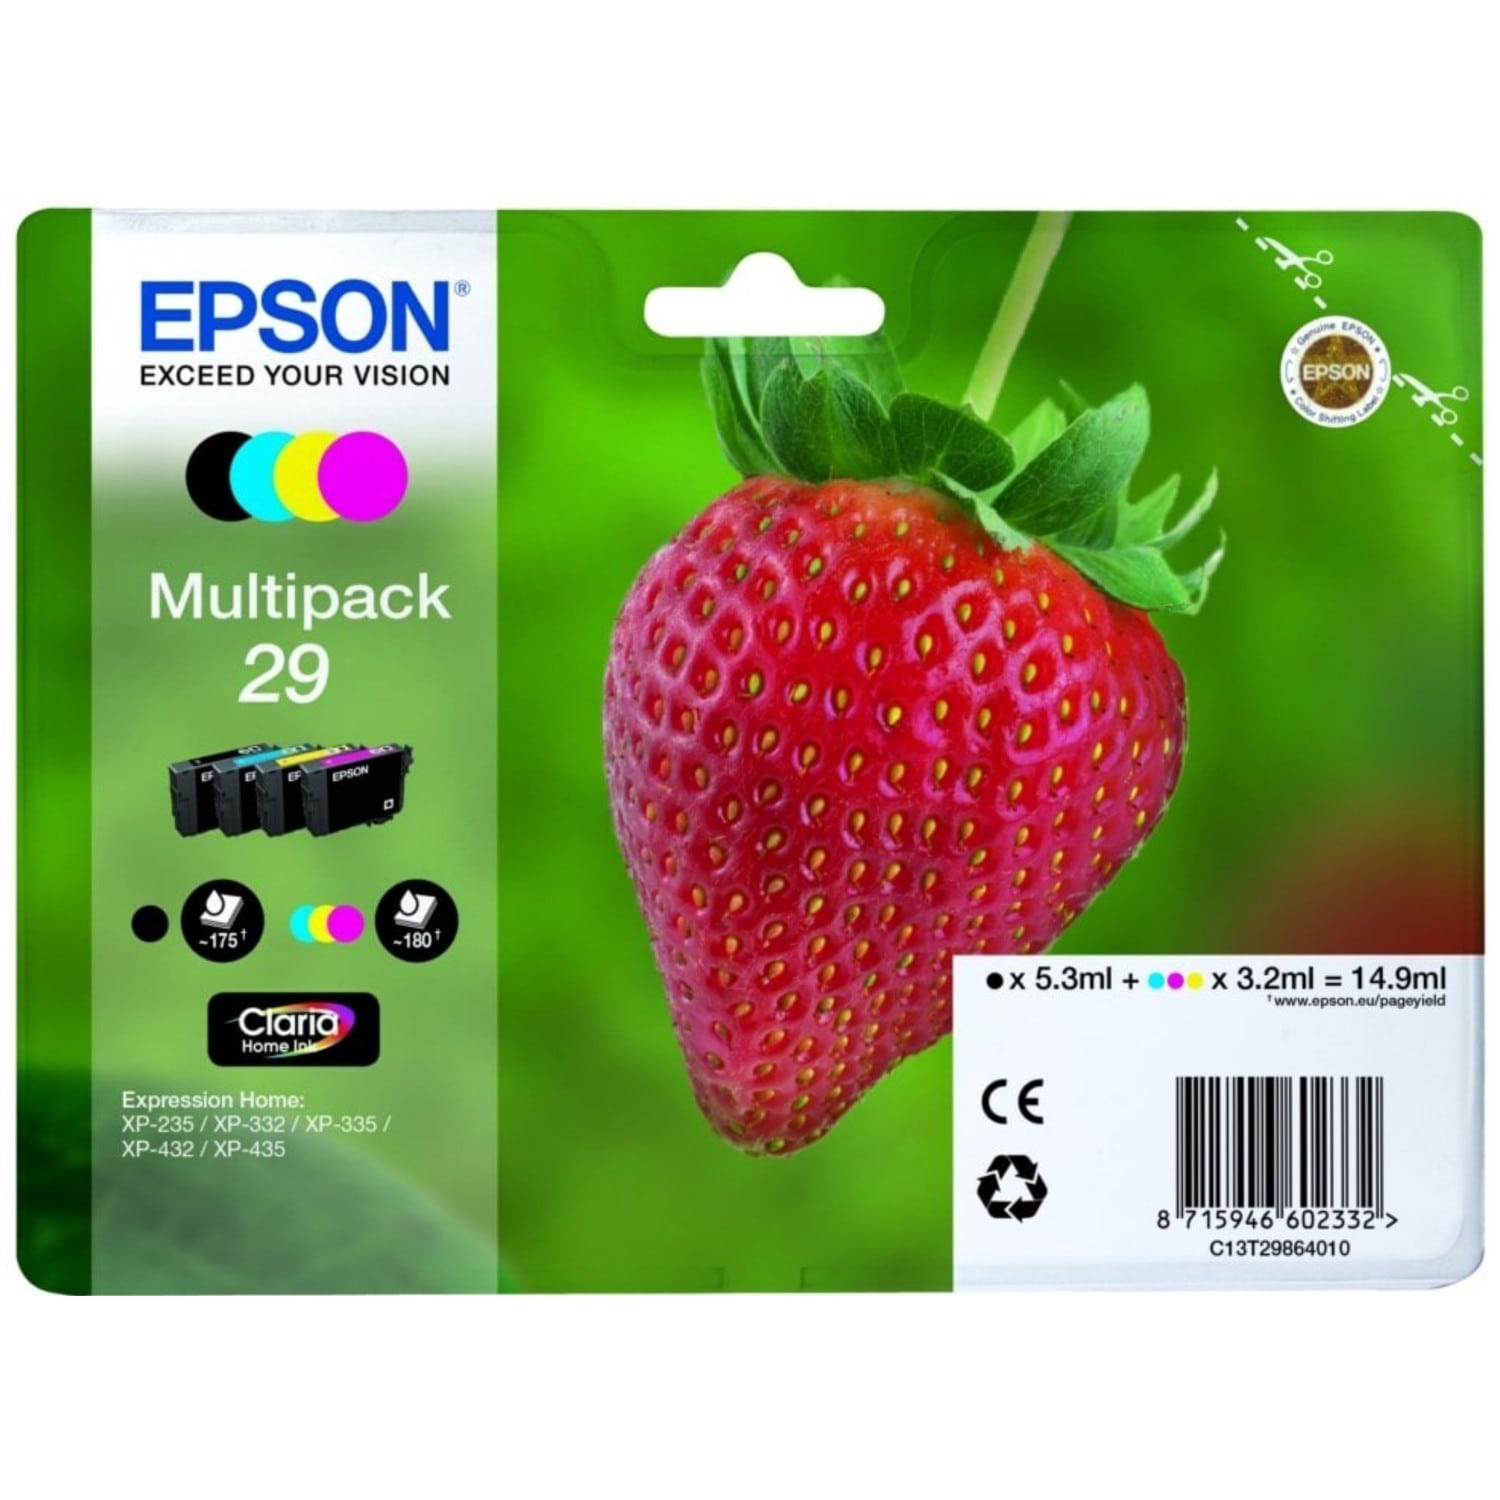 Cartouche compatible Epson 603XL Etoile de mer - pack de 4 - noir